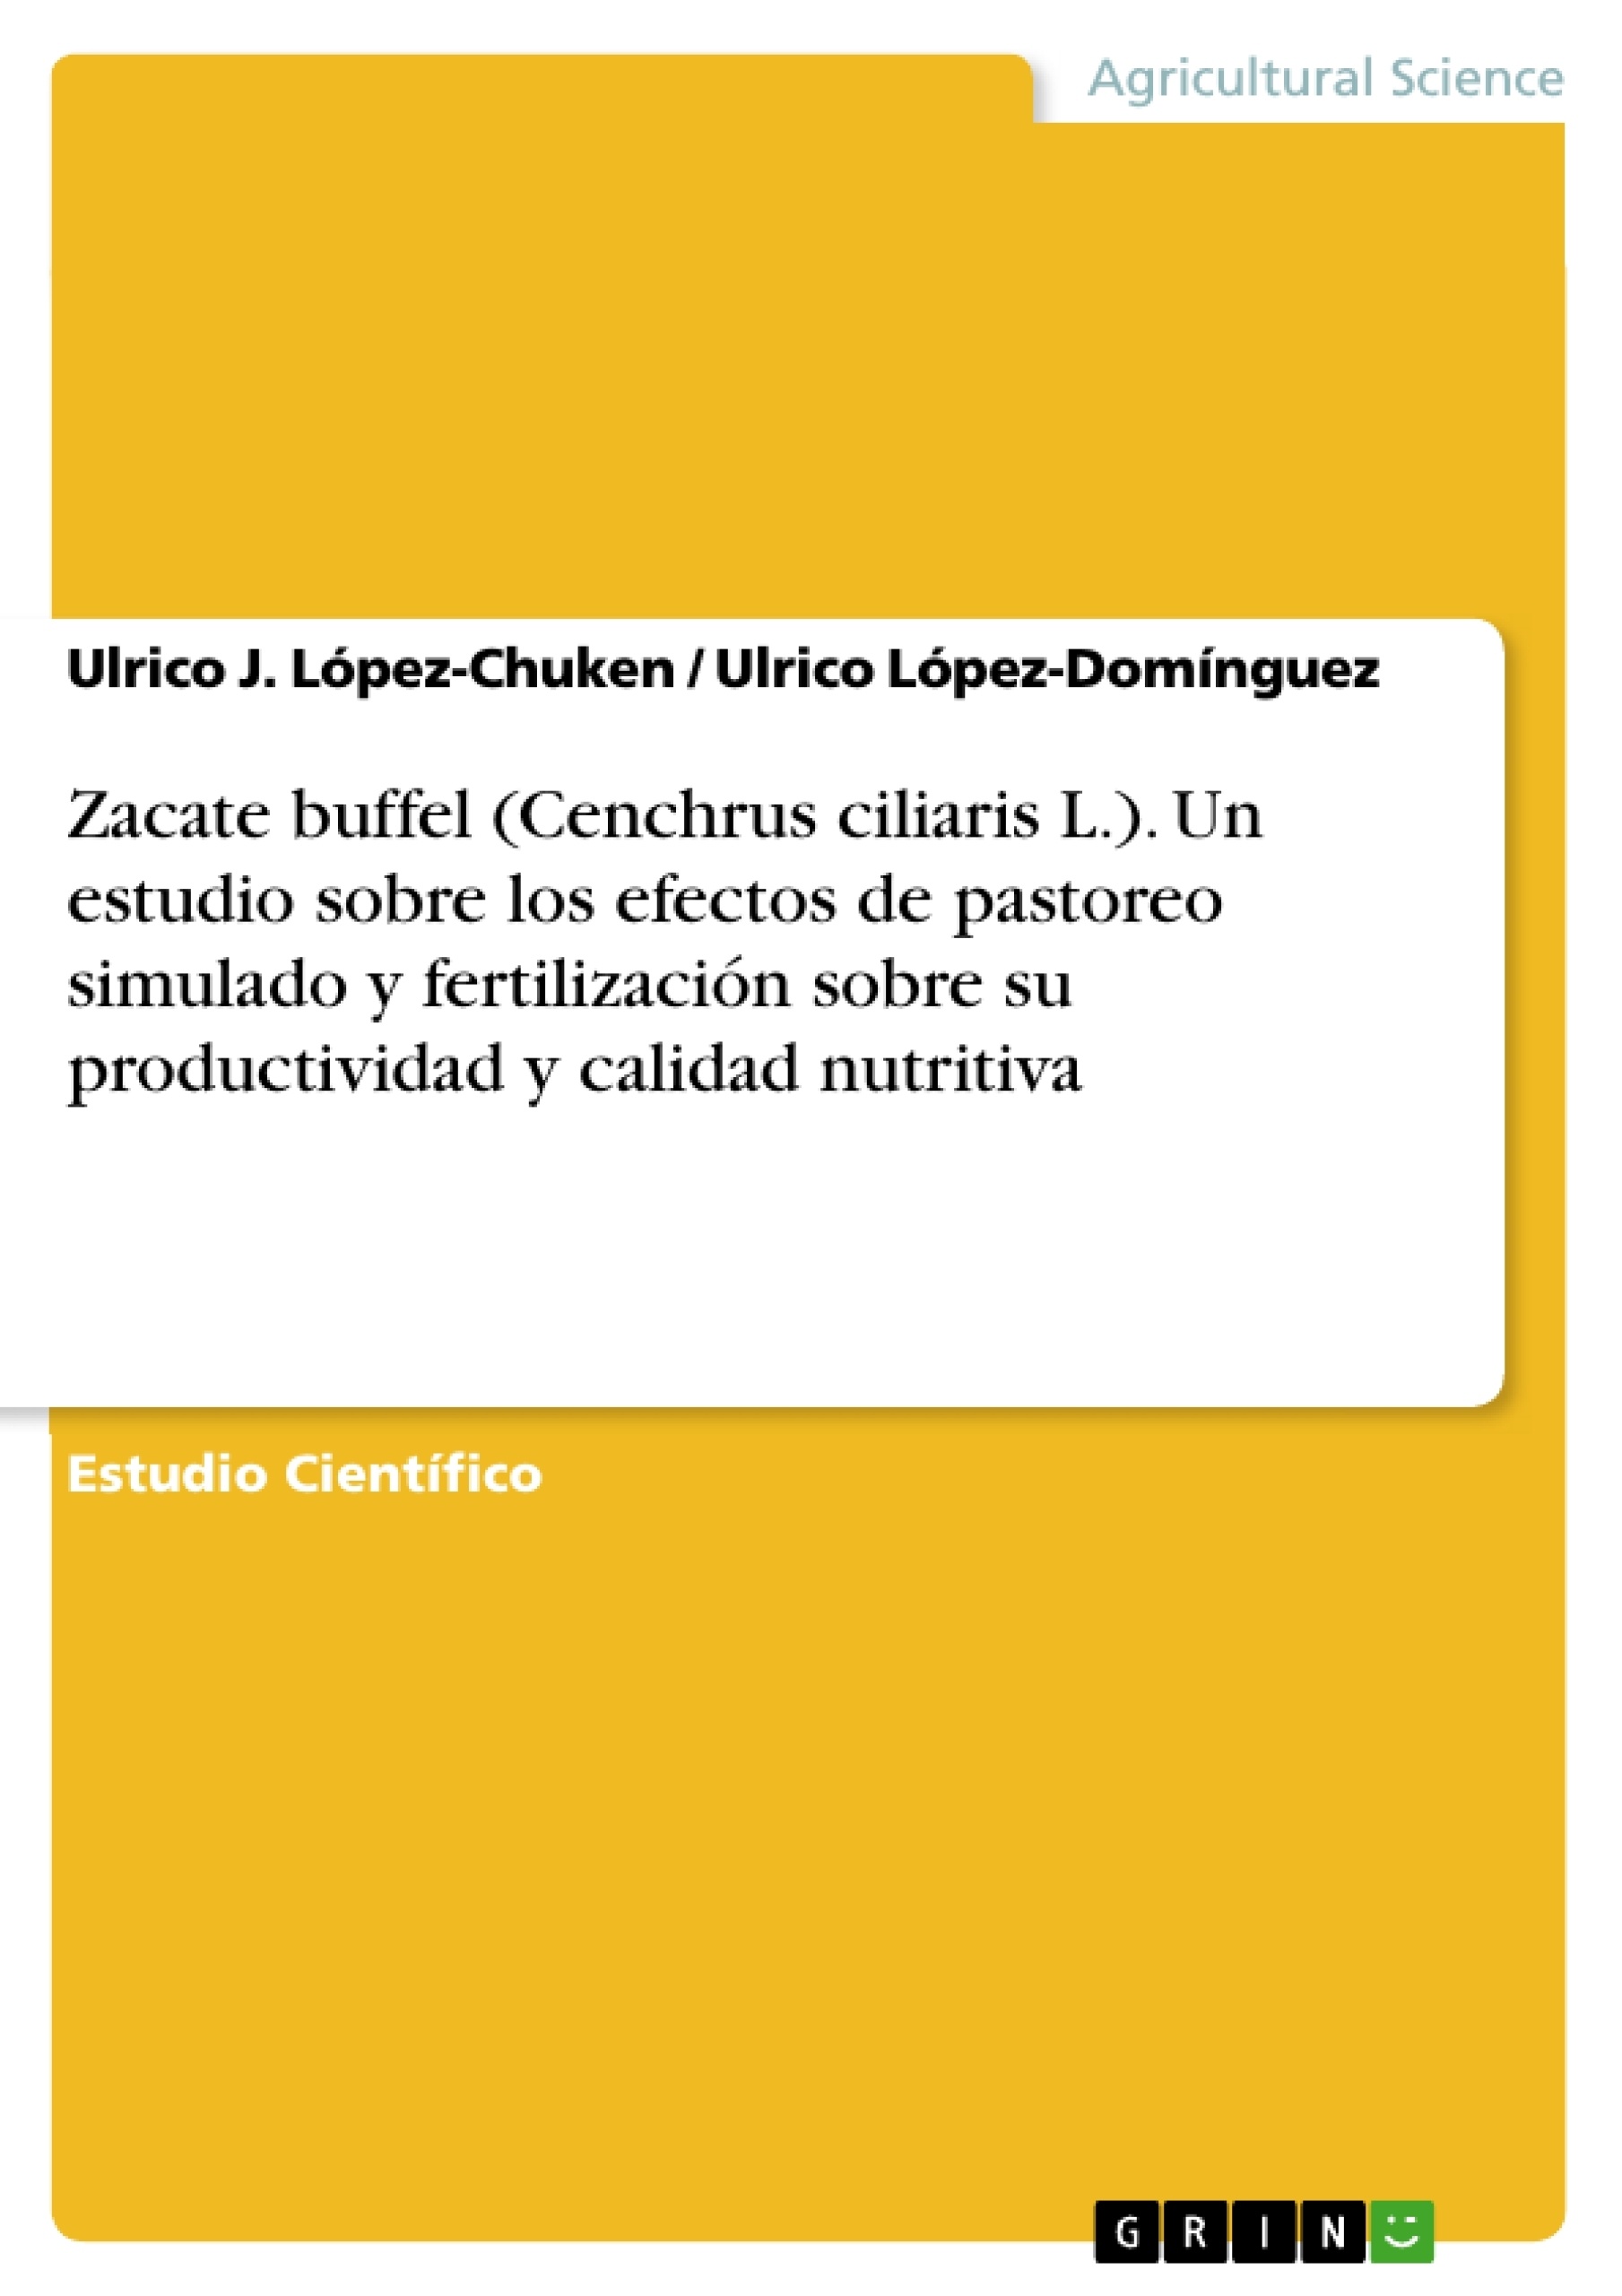 Titel: Zacate buffel (Cenchrus ciliaris L.). Un estudio sobre los efectos de pastoreo simulado y fertilización sobre su productividad y calidad nutritiva